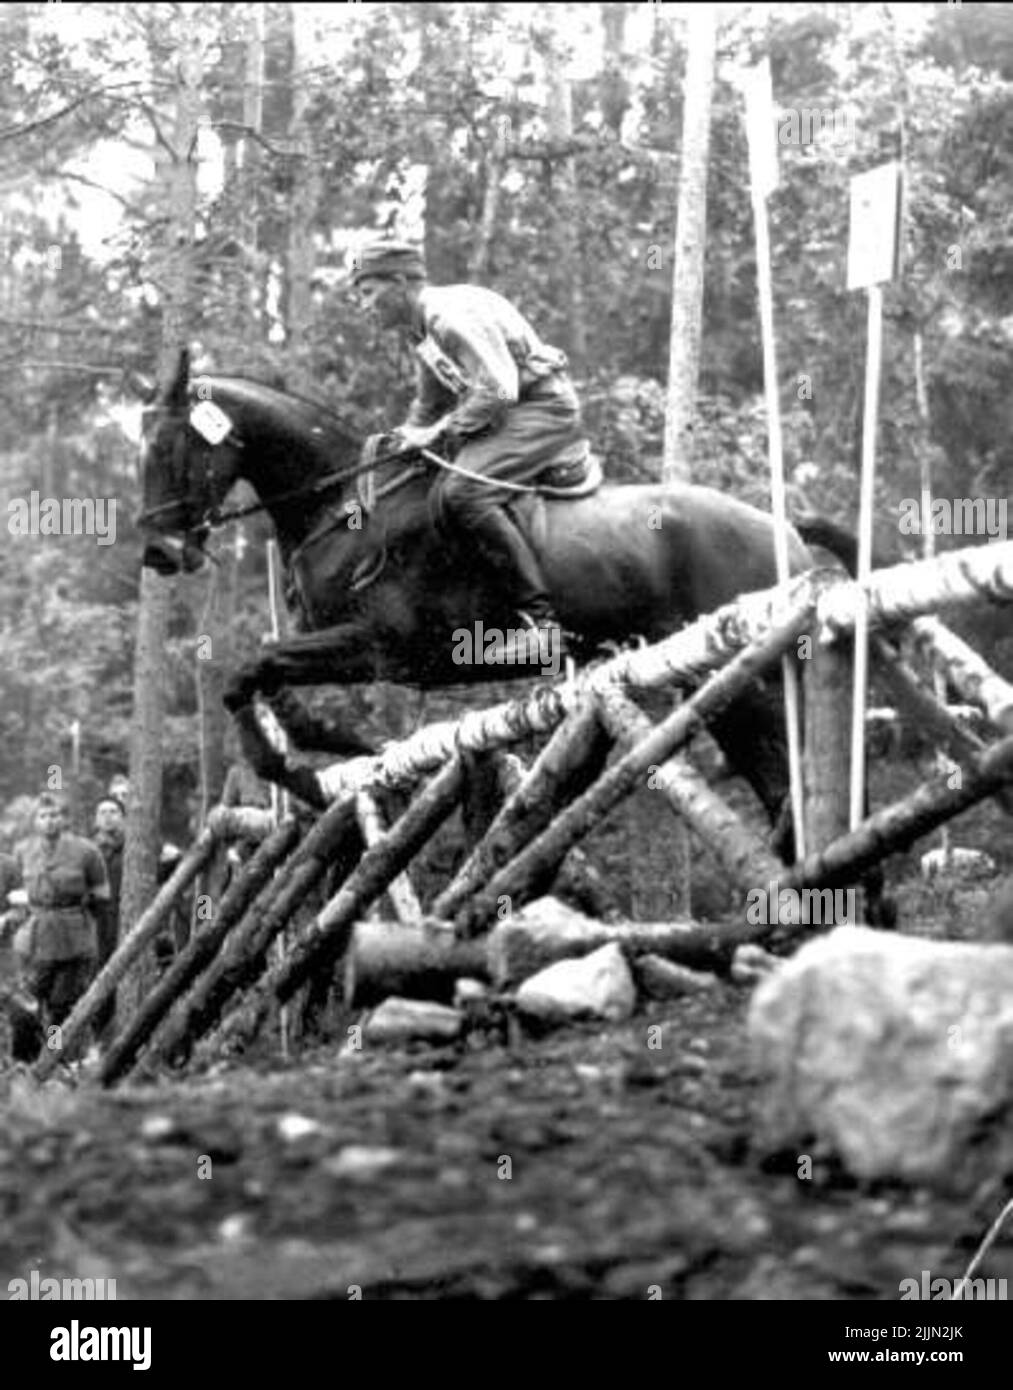 Alle XVI competizioni di cavalli olimpiche di Stoccolma nel 1956, il sergente Petrus Kastenman ha vinto la medaglia d'oro nella competizione sul campo con Iluster, le cascate dopo Tokaje- Taxinge in **. Il numero di antipasti era 59, di cui 44 sono rimasti al test finale nel salto. Iluster fu allevato ad Ottenby Kungsgård dal direttore Åsenius. Dopo la vittoria, la testa del braccio ordinato che Illuster sarebbe stato premiato il Life Regiment's Husars, in aggiunta al numero regolare di cavalli pedigree, e premiato Sergente Kasterman come il cavallo di servizio, Iluster che è nato nel 1948, ha vissuto a 15/6-1960. Foto Stock